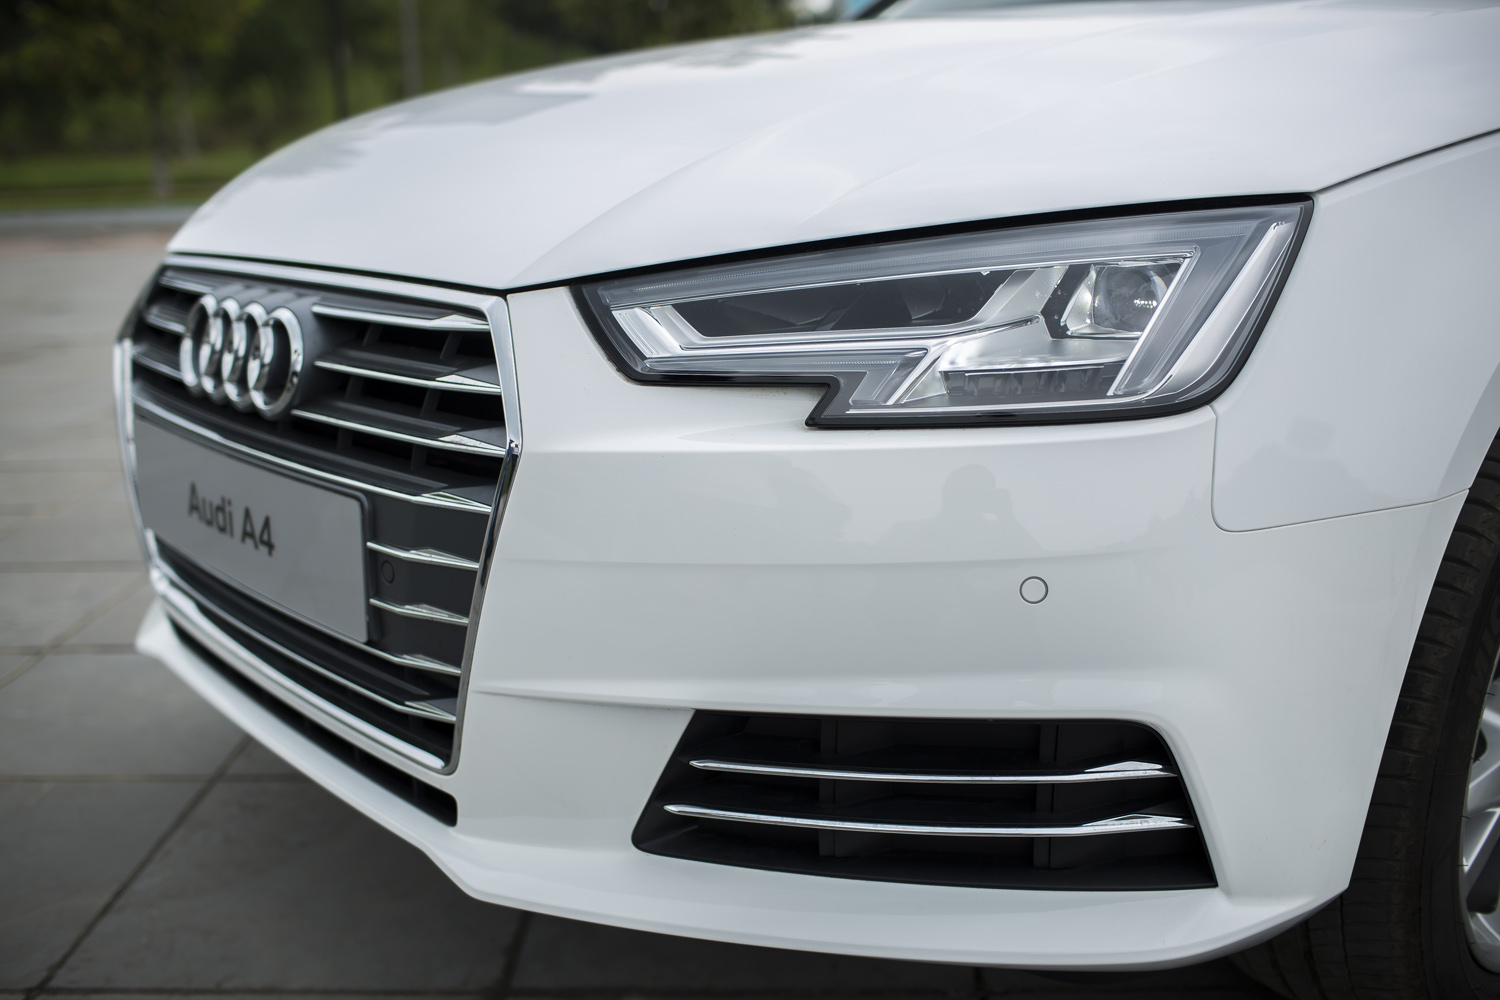 
Audi mang tới 2 tuỳ chọn đèn chiếu sáng cho Audi A4 thế hệ mới là LED và LED ma trận.
